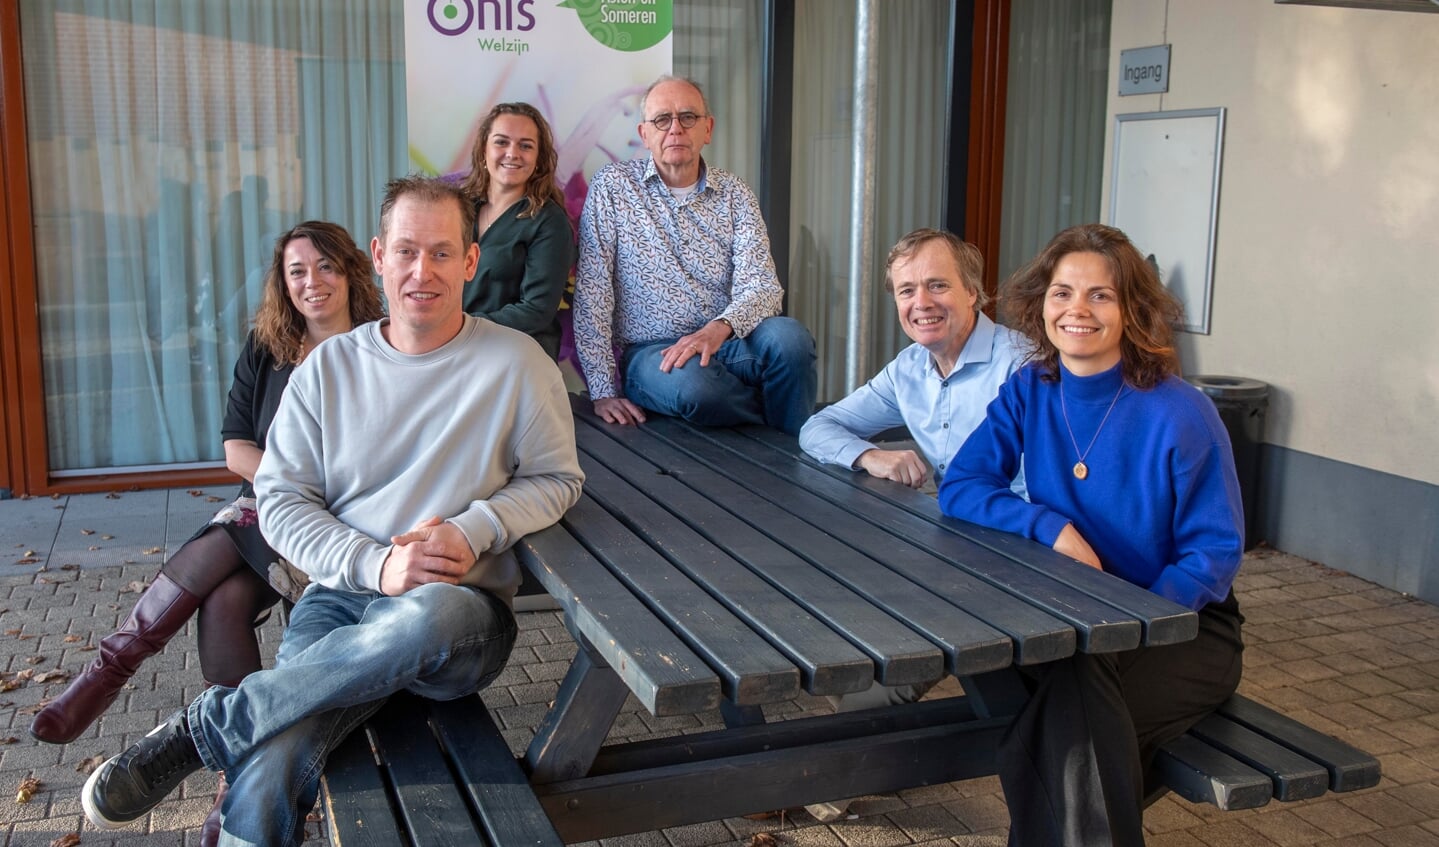 Het Onis-team vlnr: Christel de la Combé, Antoin Bakermans, Demi Wullems, Henny van den Boomen, Hein Wulf en Eva de Jong. (Foto: Hein van Bakel)